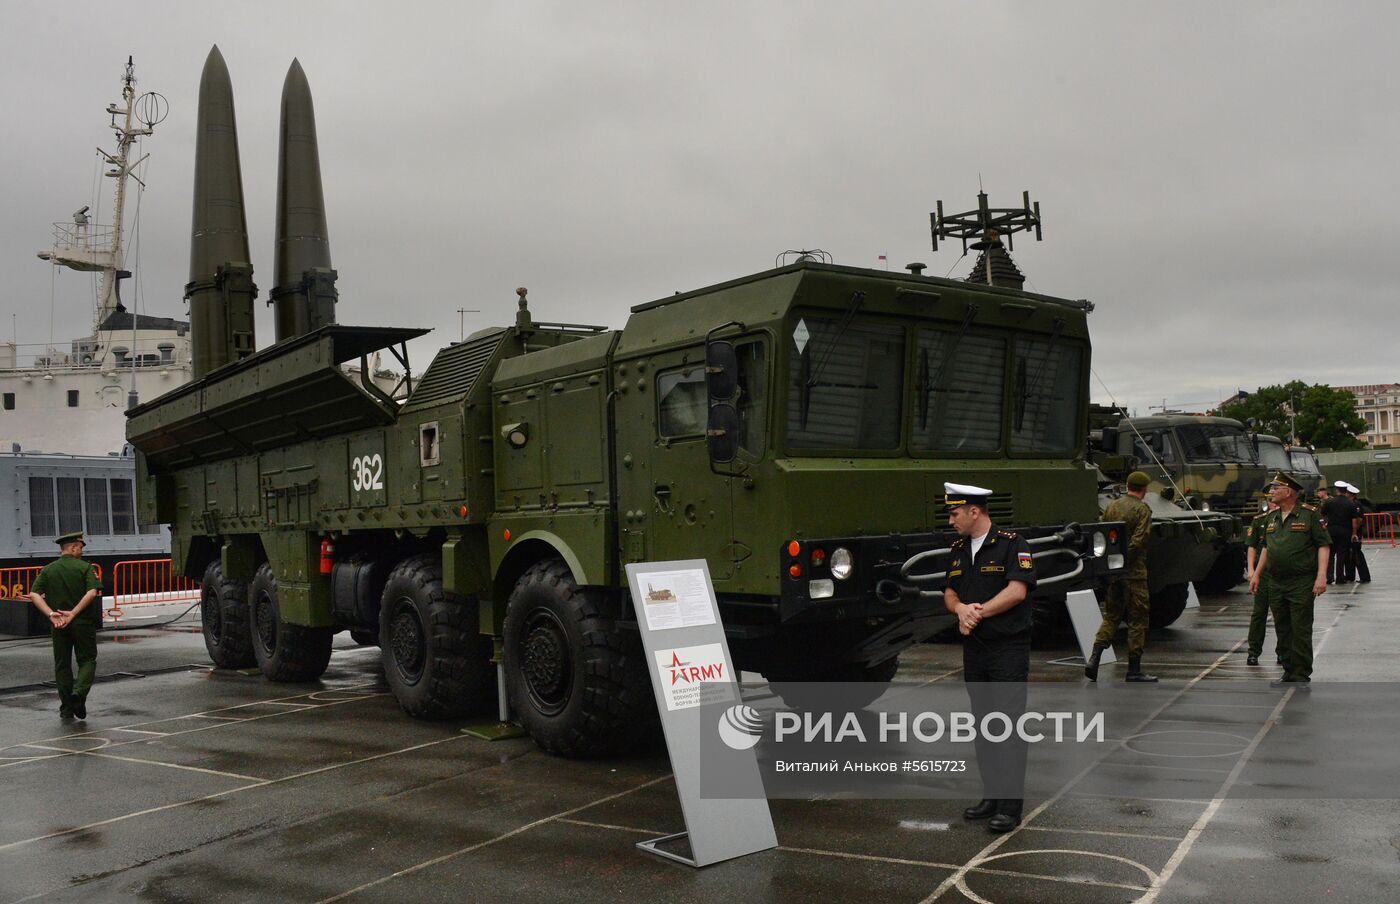 Открытие военно-технического форума "Армия-2018" во Владивостоке